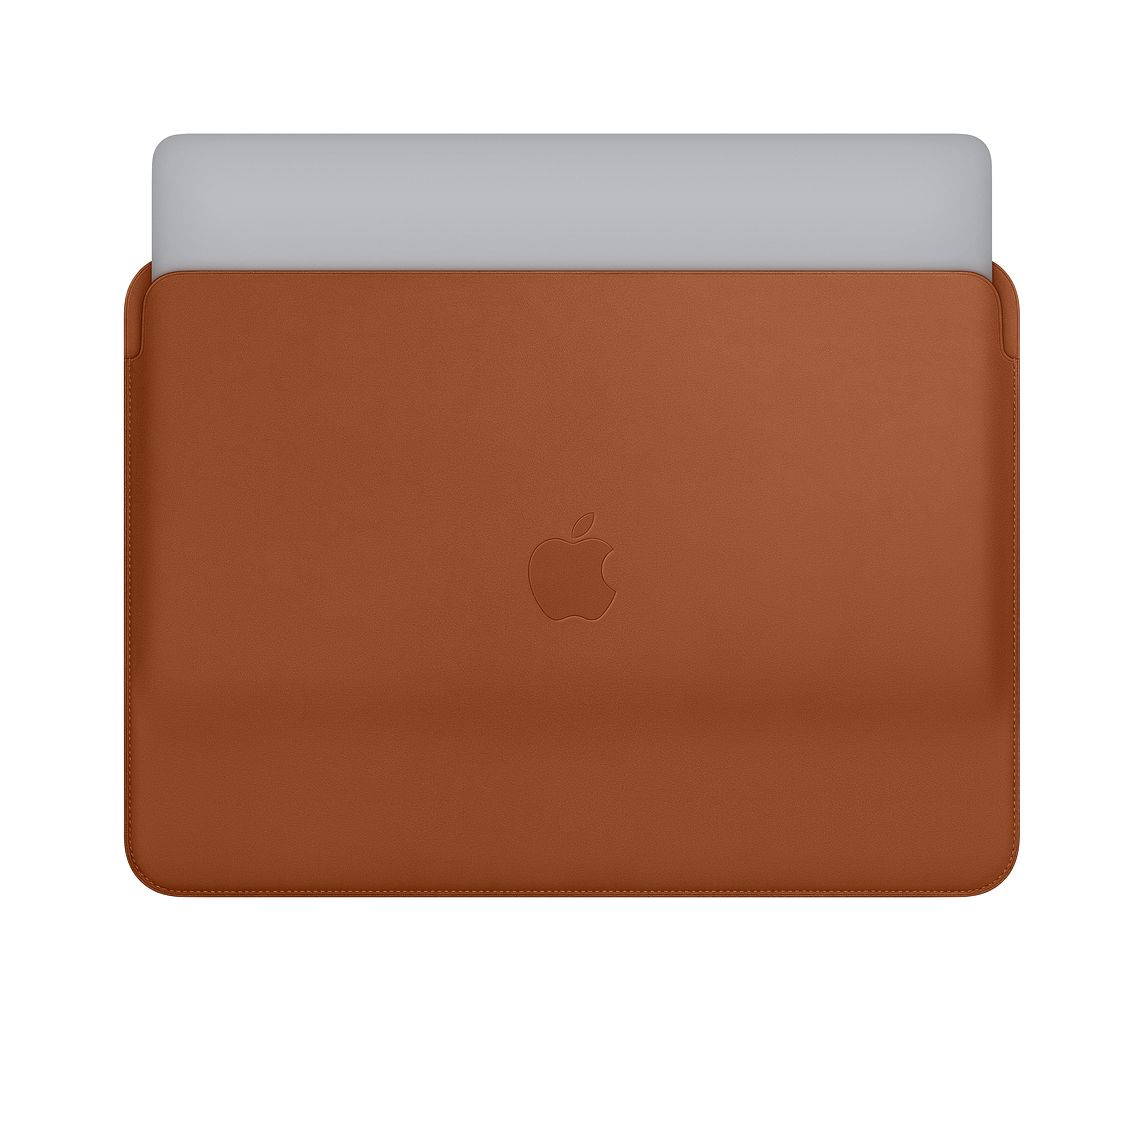 Apple、｢MacBook Pro 13インチ｣向けの純正レザースリーブを発売